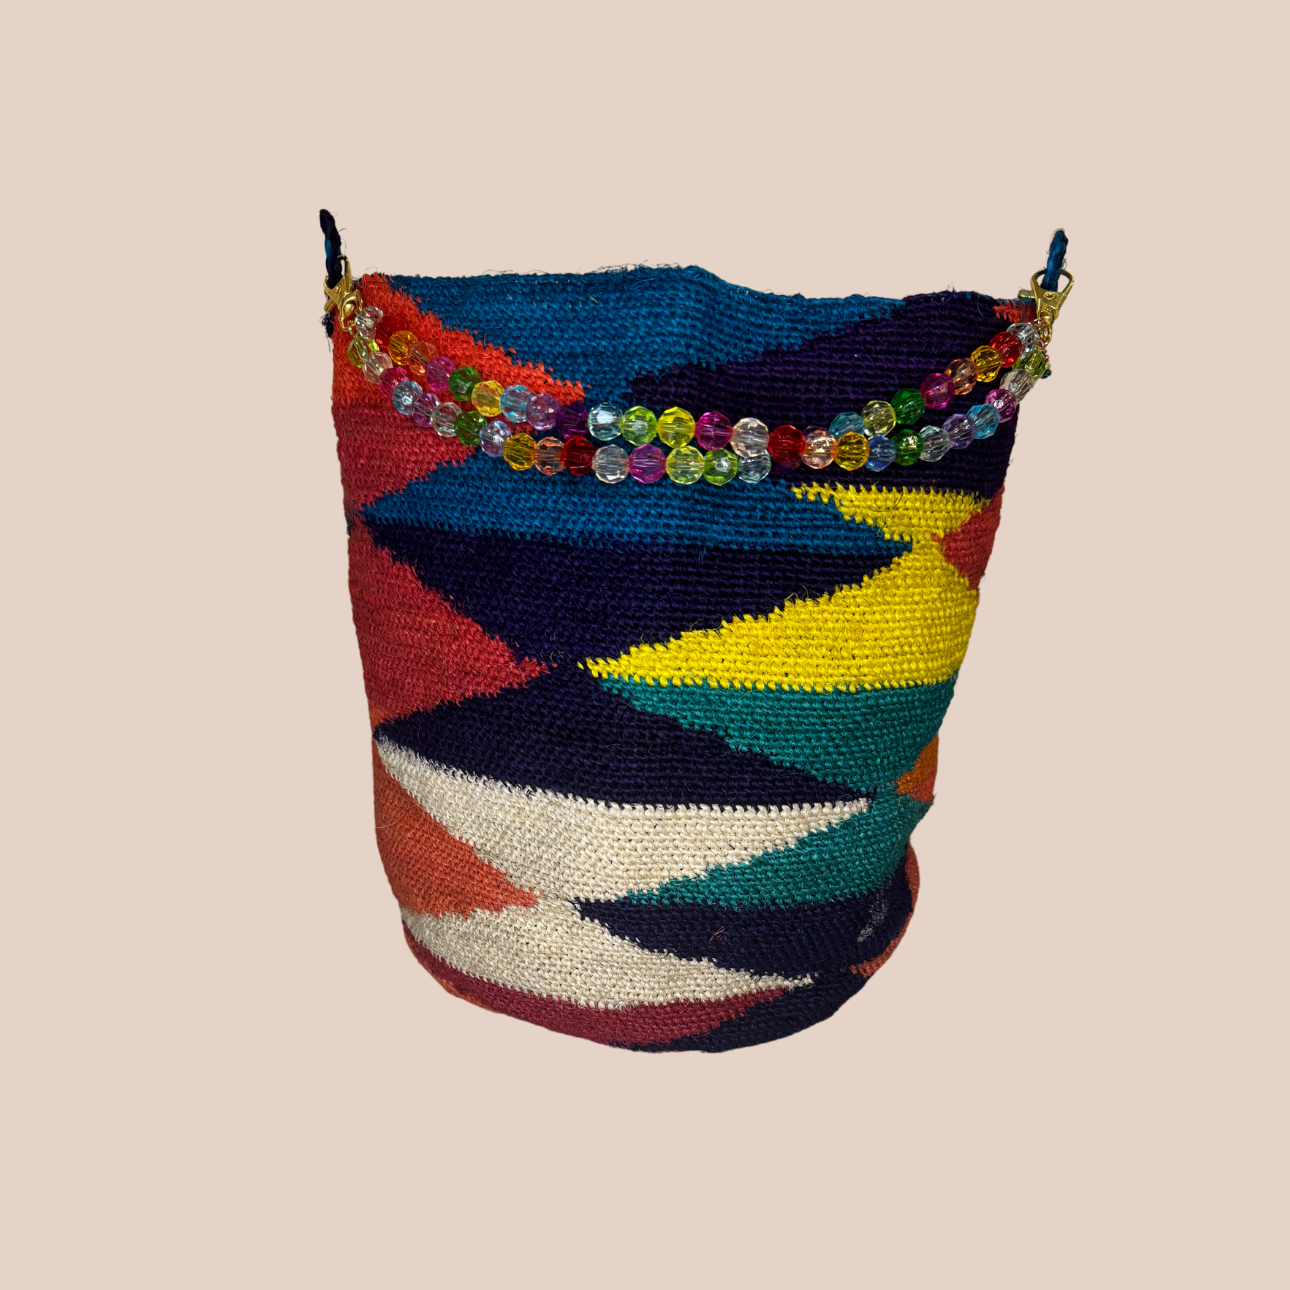 Image du sac princesa anses pasteque de Maison Badigo, sac en fibres naturelles de cactus multicolore unique et tendance